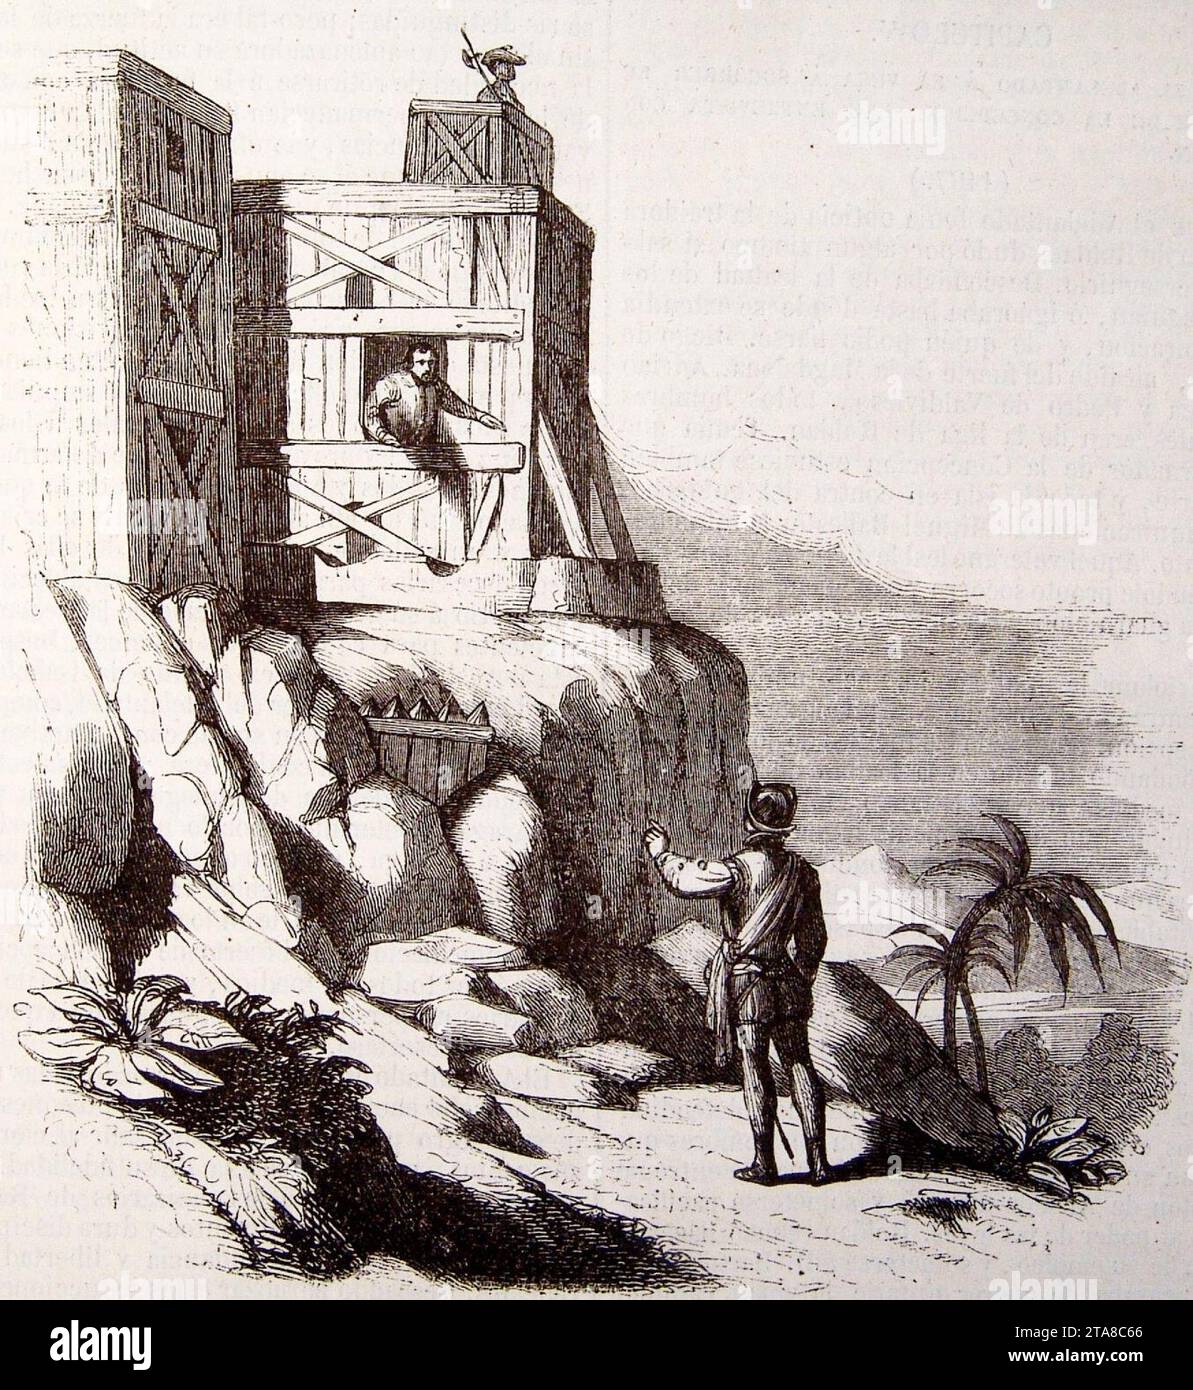 Vida y viajes de Cristobal Colón, 1851 Entrevista del Adelantado y Roldán en el fuerte de la Concepción (3819532971). Stock Photo